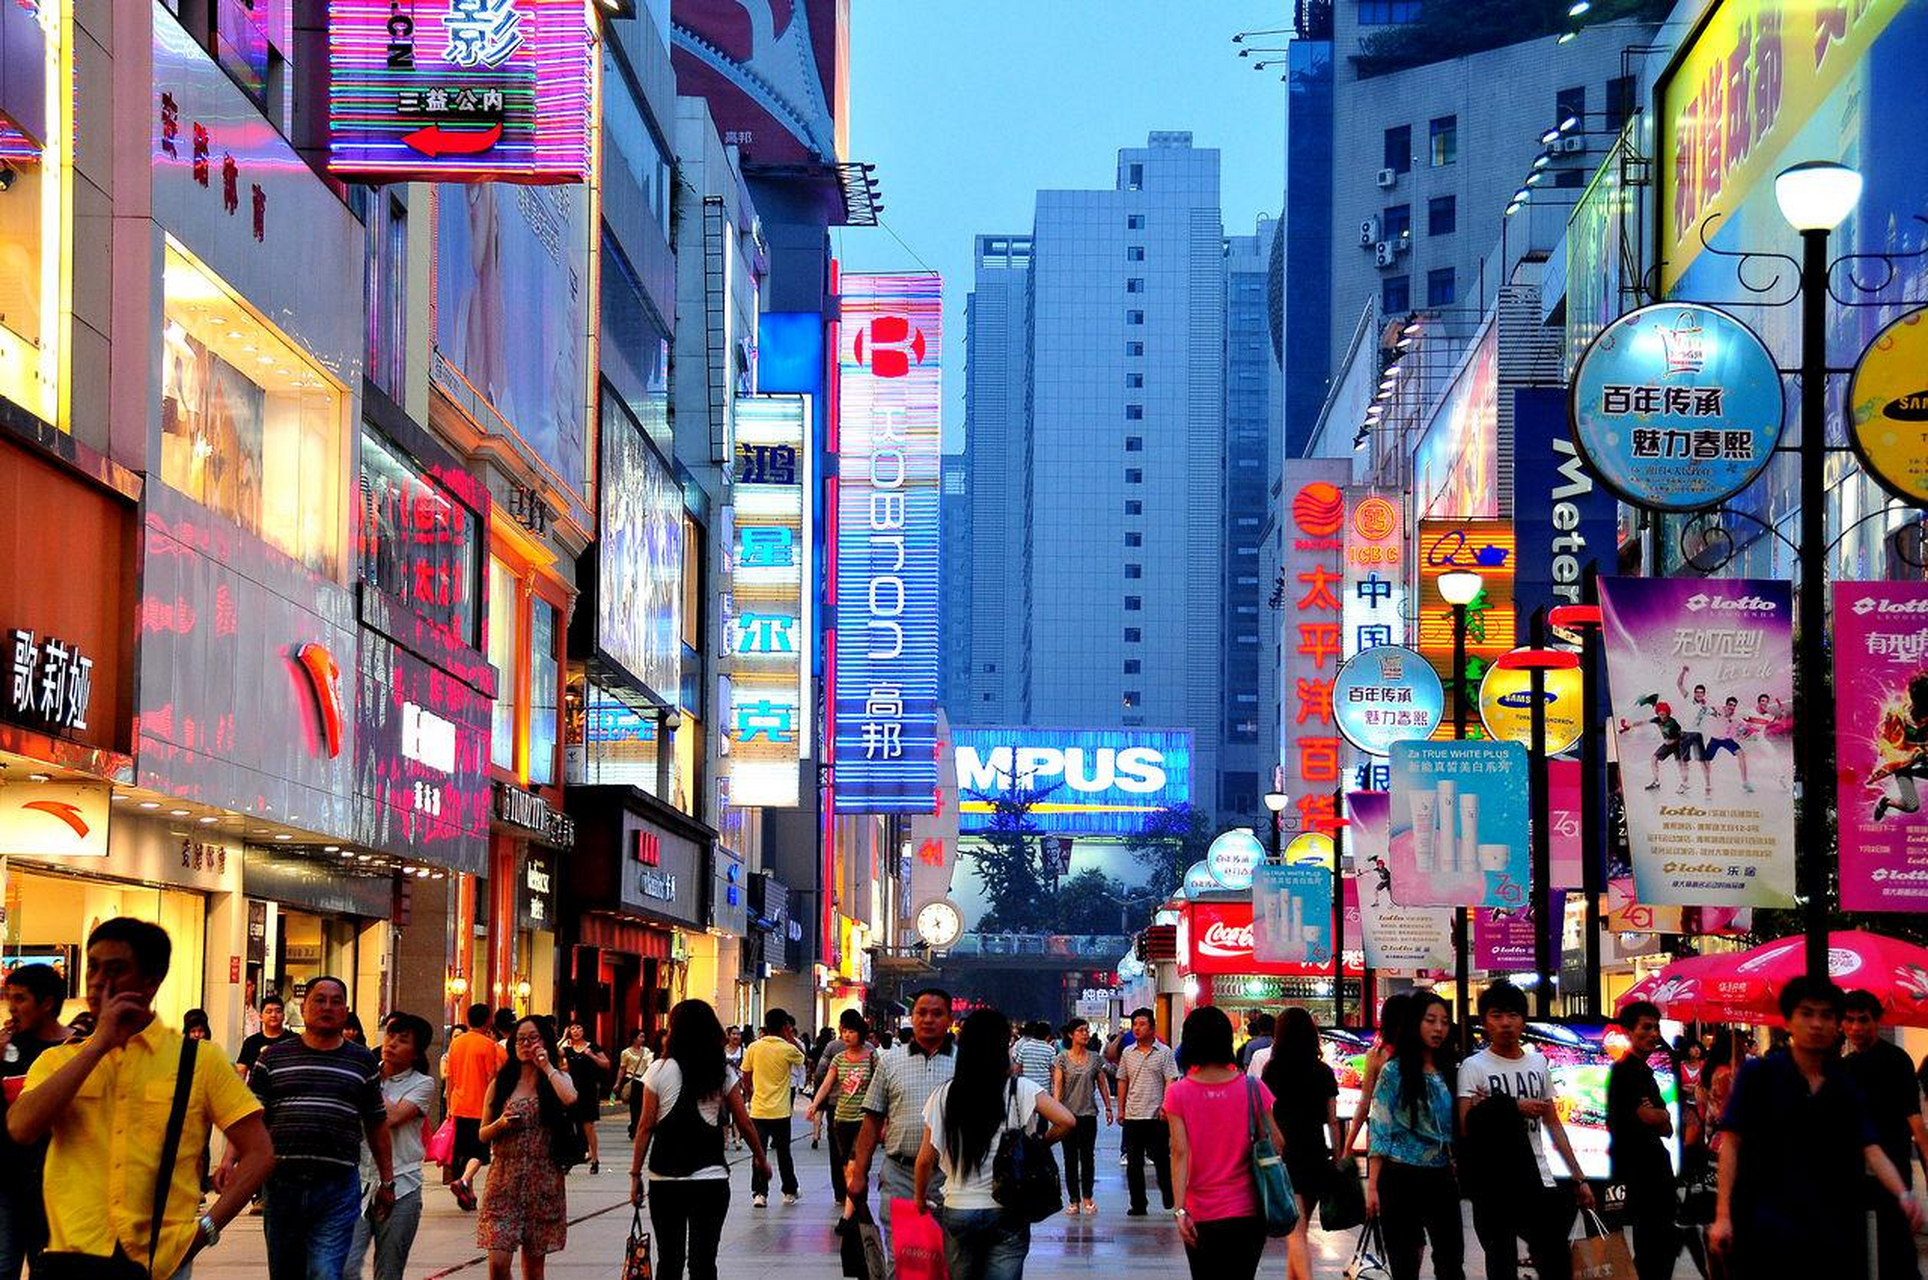 成都春熙路:被誉为中西部第一商业街,不仅是全国美女指数最高的地方